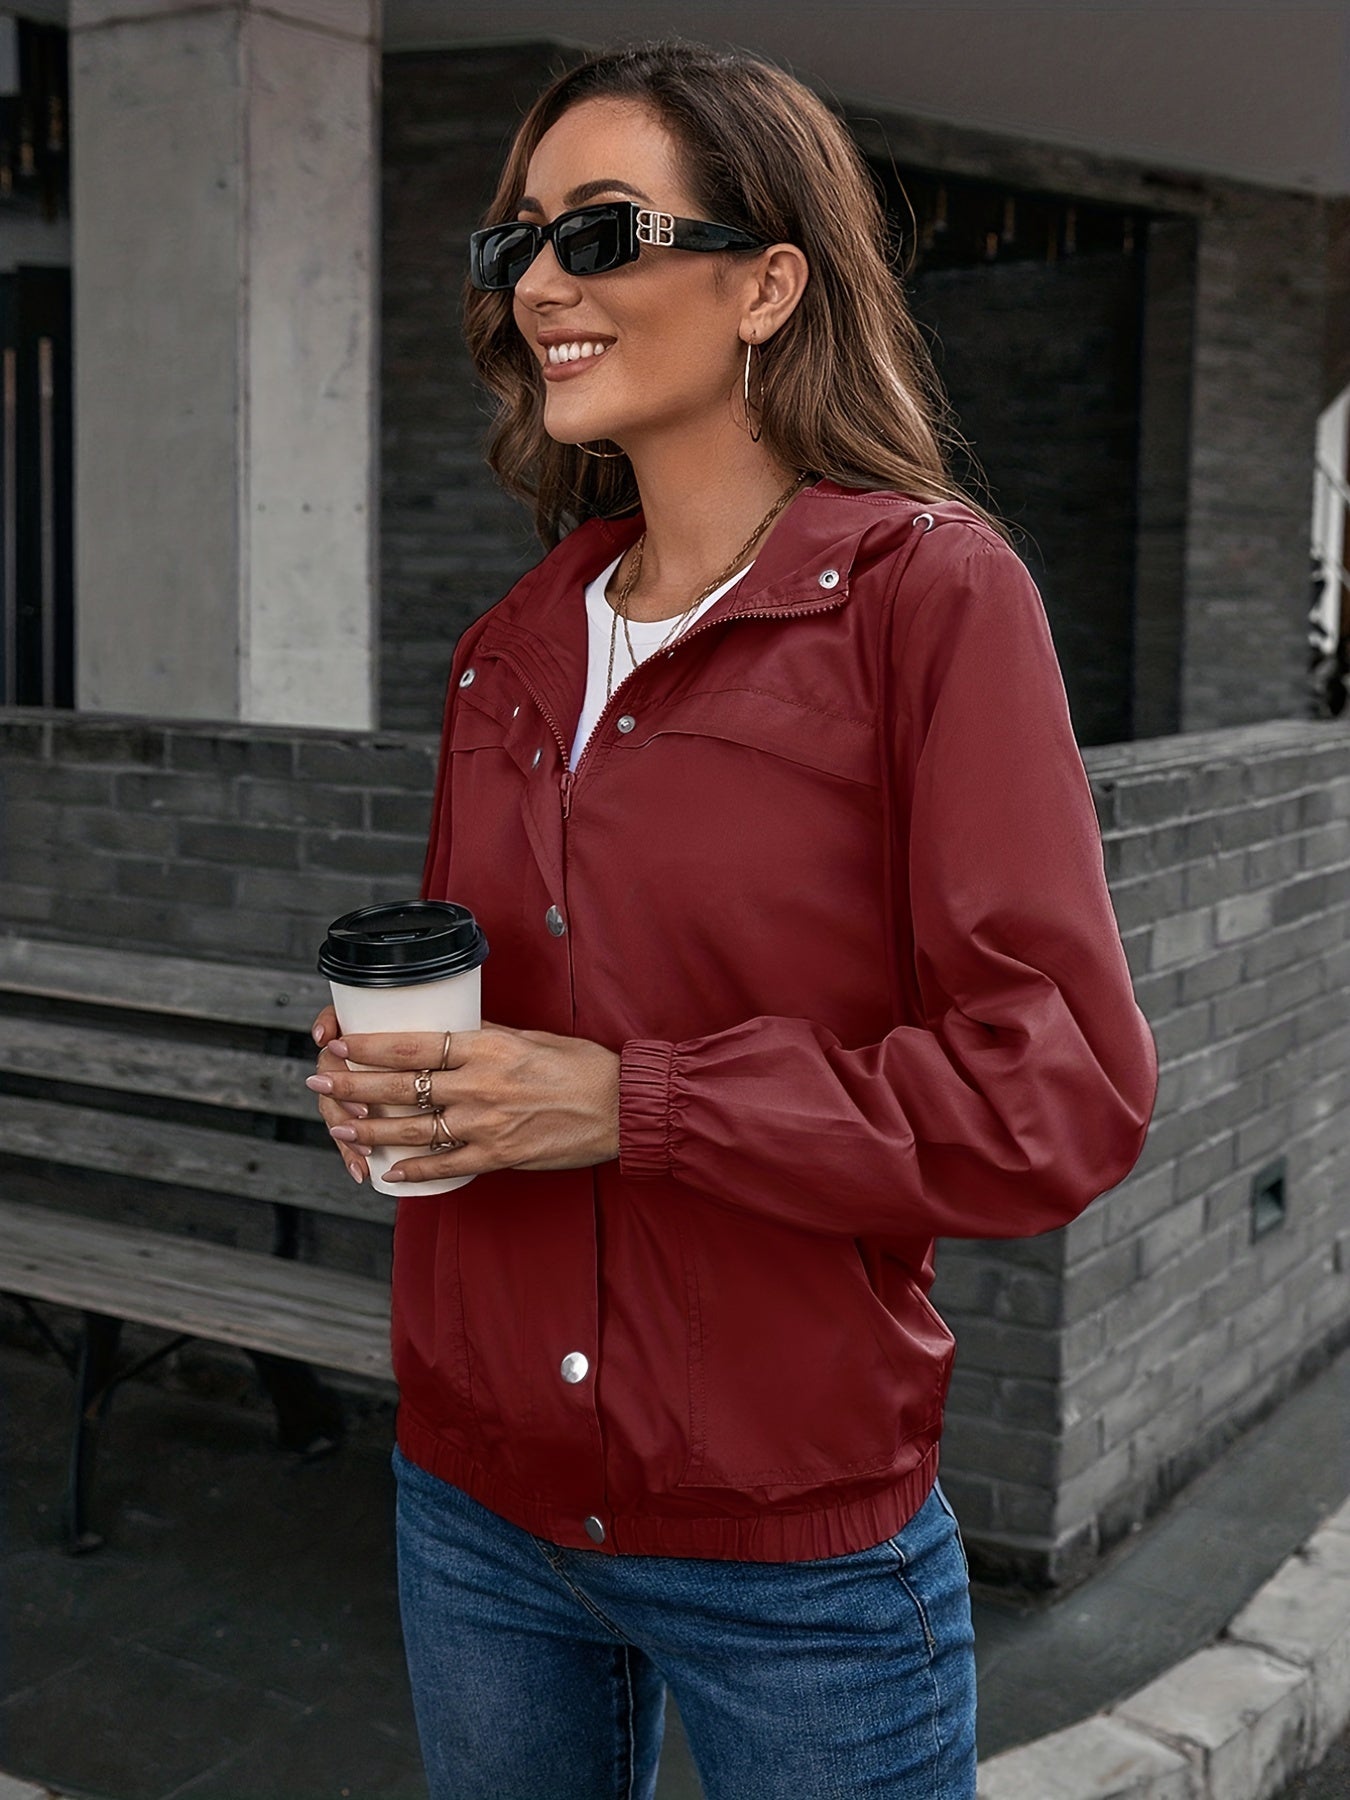 Women's Outerwear Hooded Rain Jacket Outdoor Sports Windbreaker Jacket Waterproof Jacket